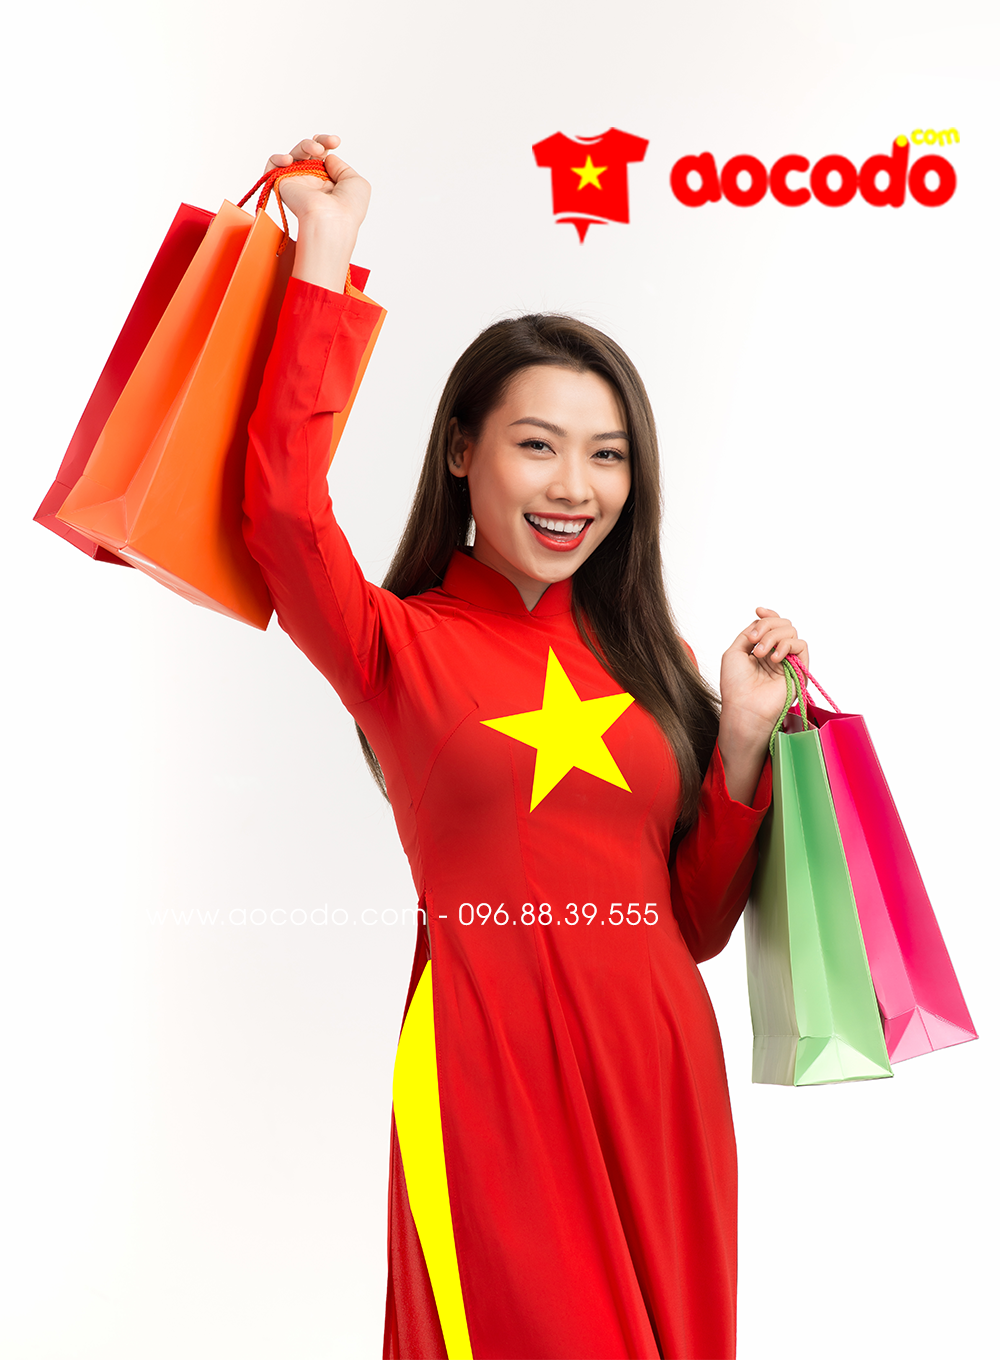 Áo dài cờ đỏ sao vàng: Áo dài cờ đỏ sao vàng là biểu tượng của văn hóa truyền thống Việt Nam. Hiện nay, những chiếc áo dài này đã được cải tiến với nhiều màu sắc, chất liệu và kiểu dáng khác nhau, phù hợp với nhiều đối tượng và sự kiện khác nhau từ lễ hội đến các buổi tiệc. Hãy nhấn mạnh sự đẹp của dân tộc Việt Nam với những bộ áo dài cờ đỏ sao vàng tuyệt đẹp này.